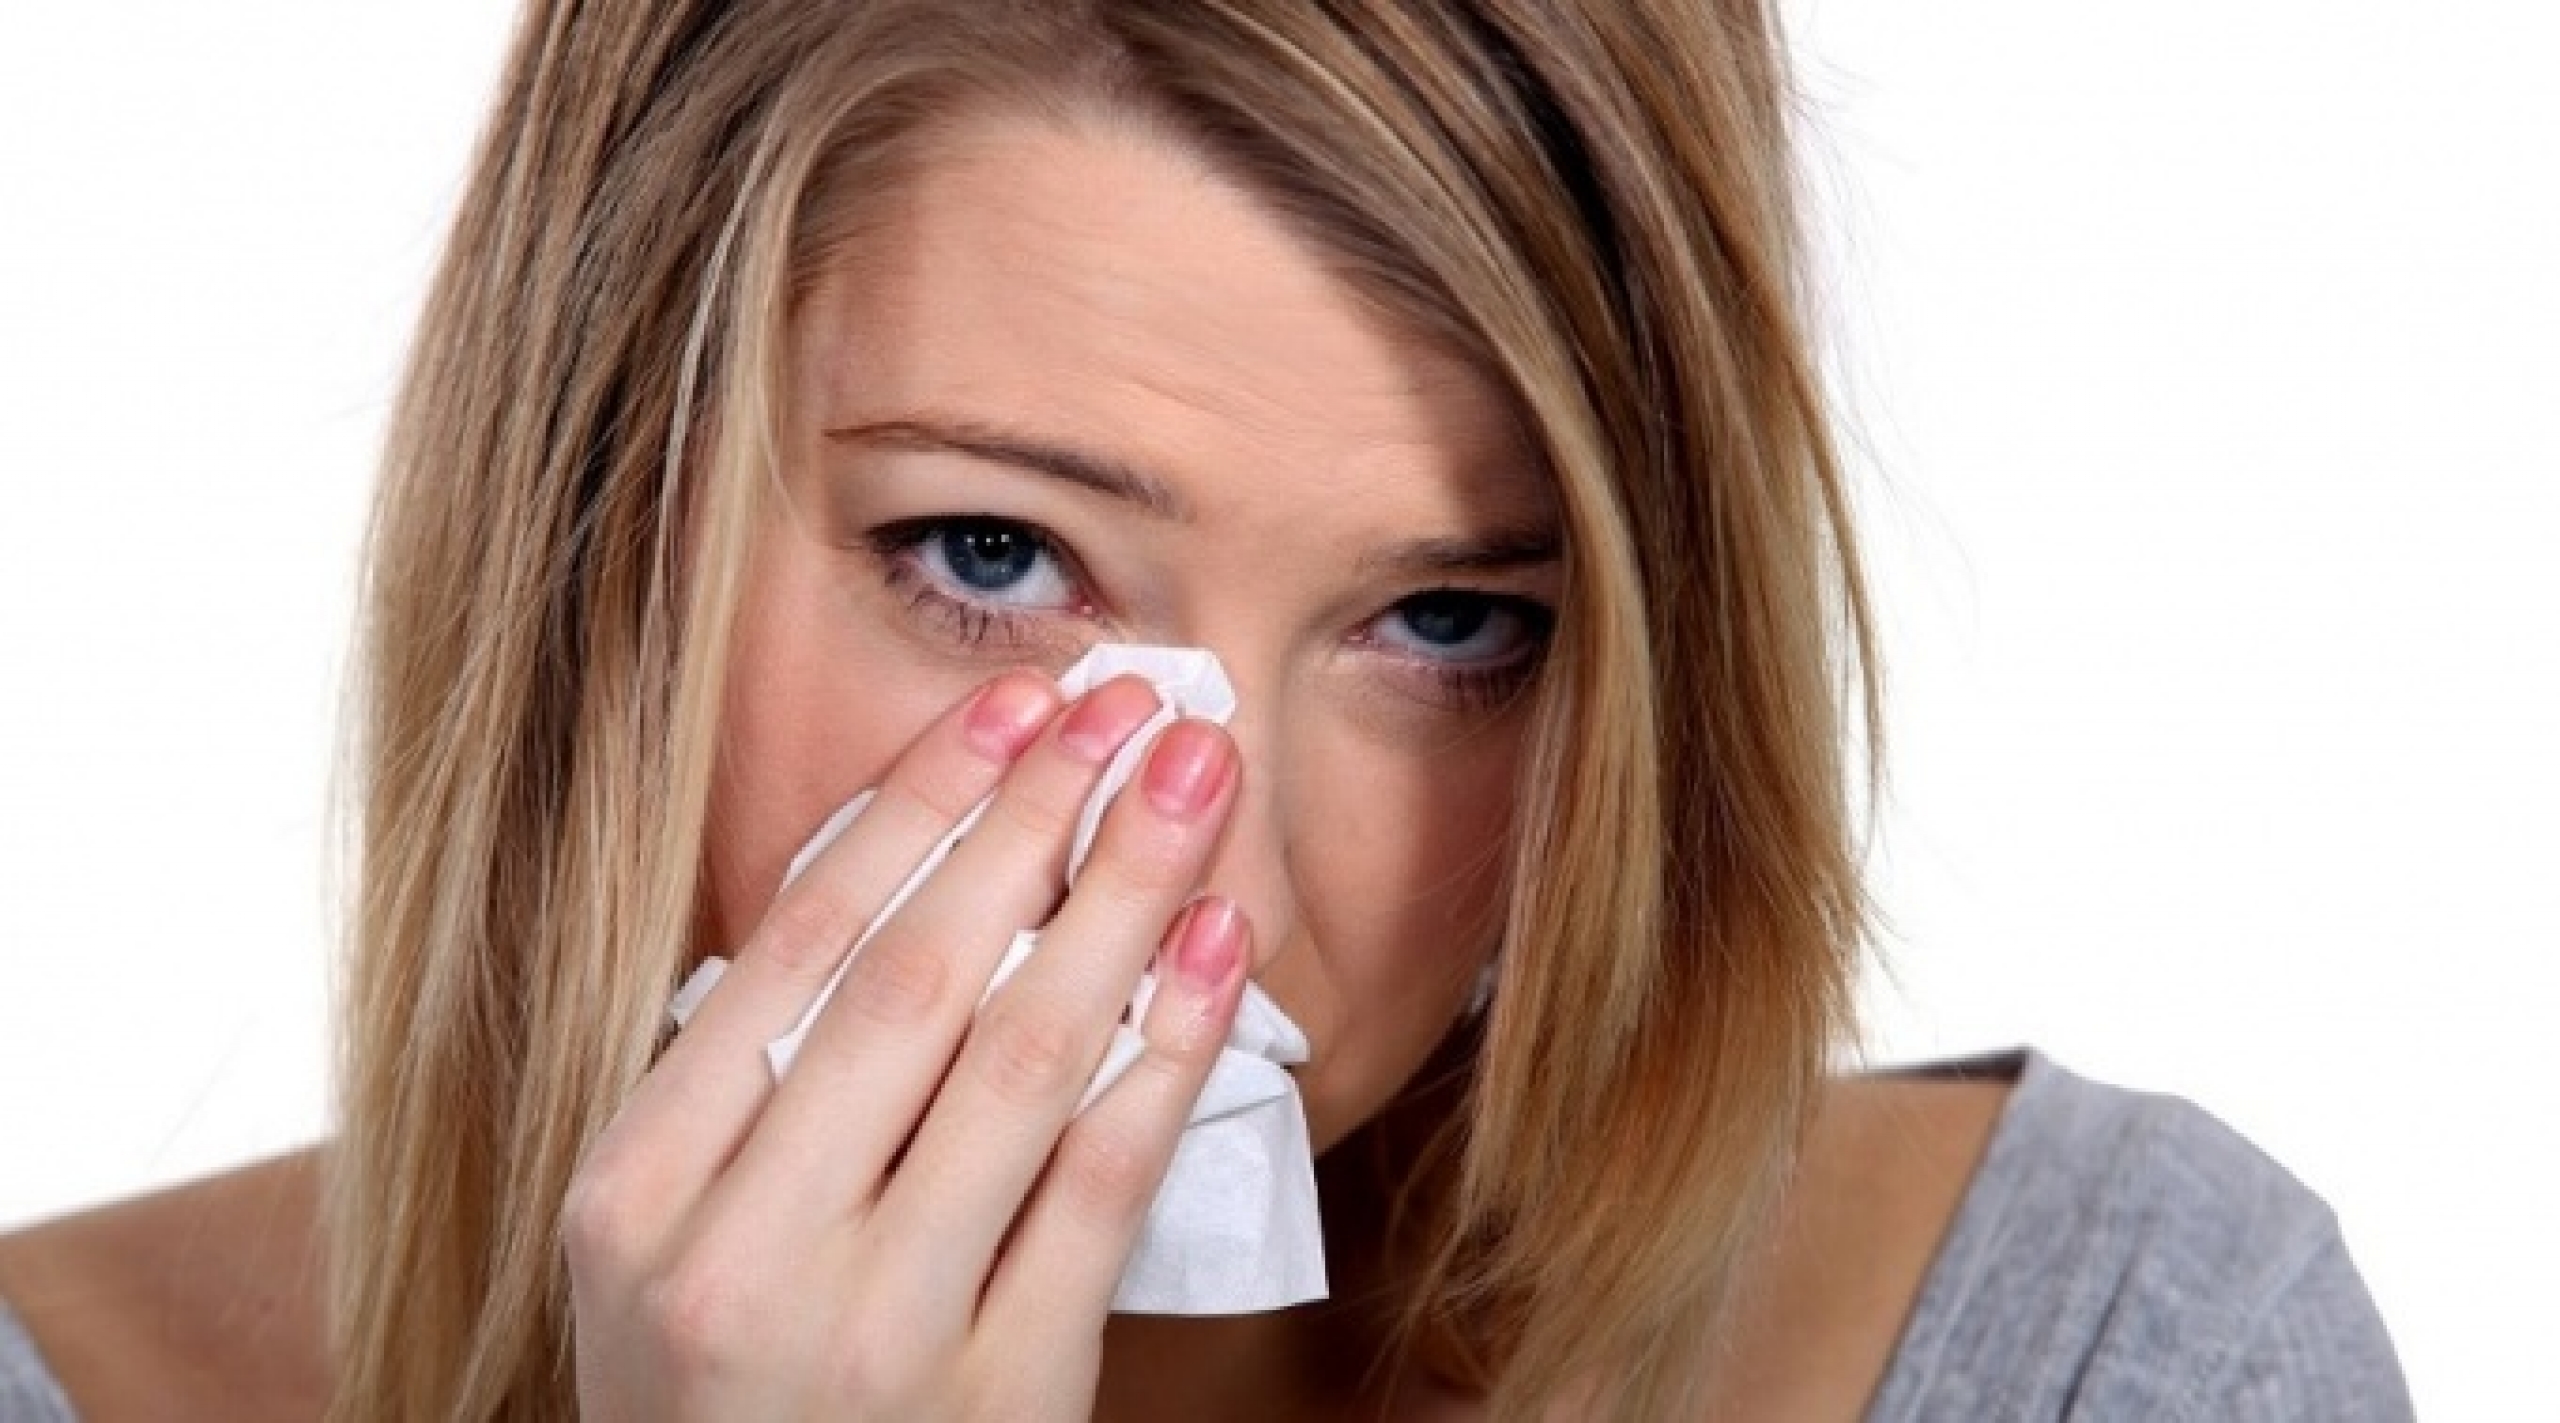 Народные средства против симптомов аллергии на глазах